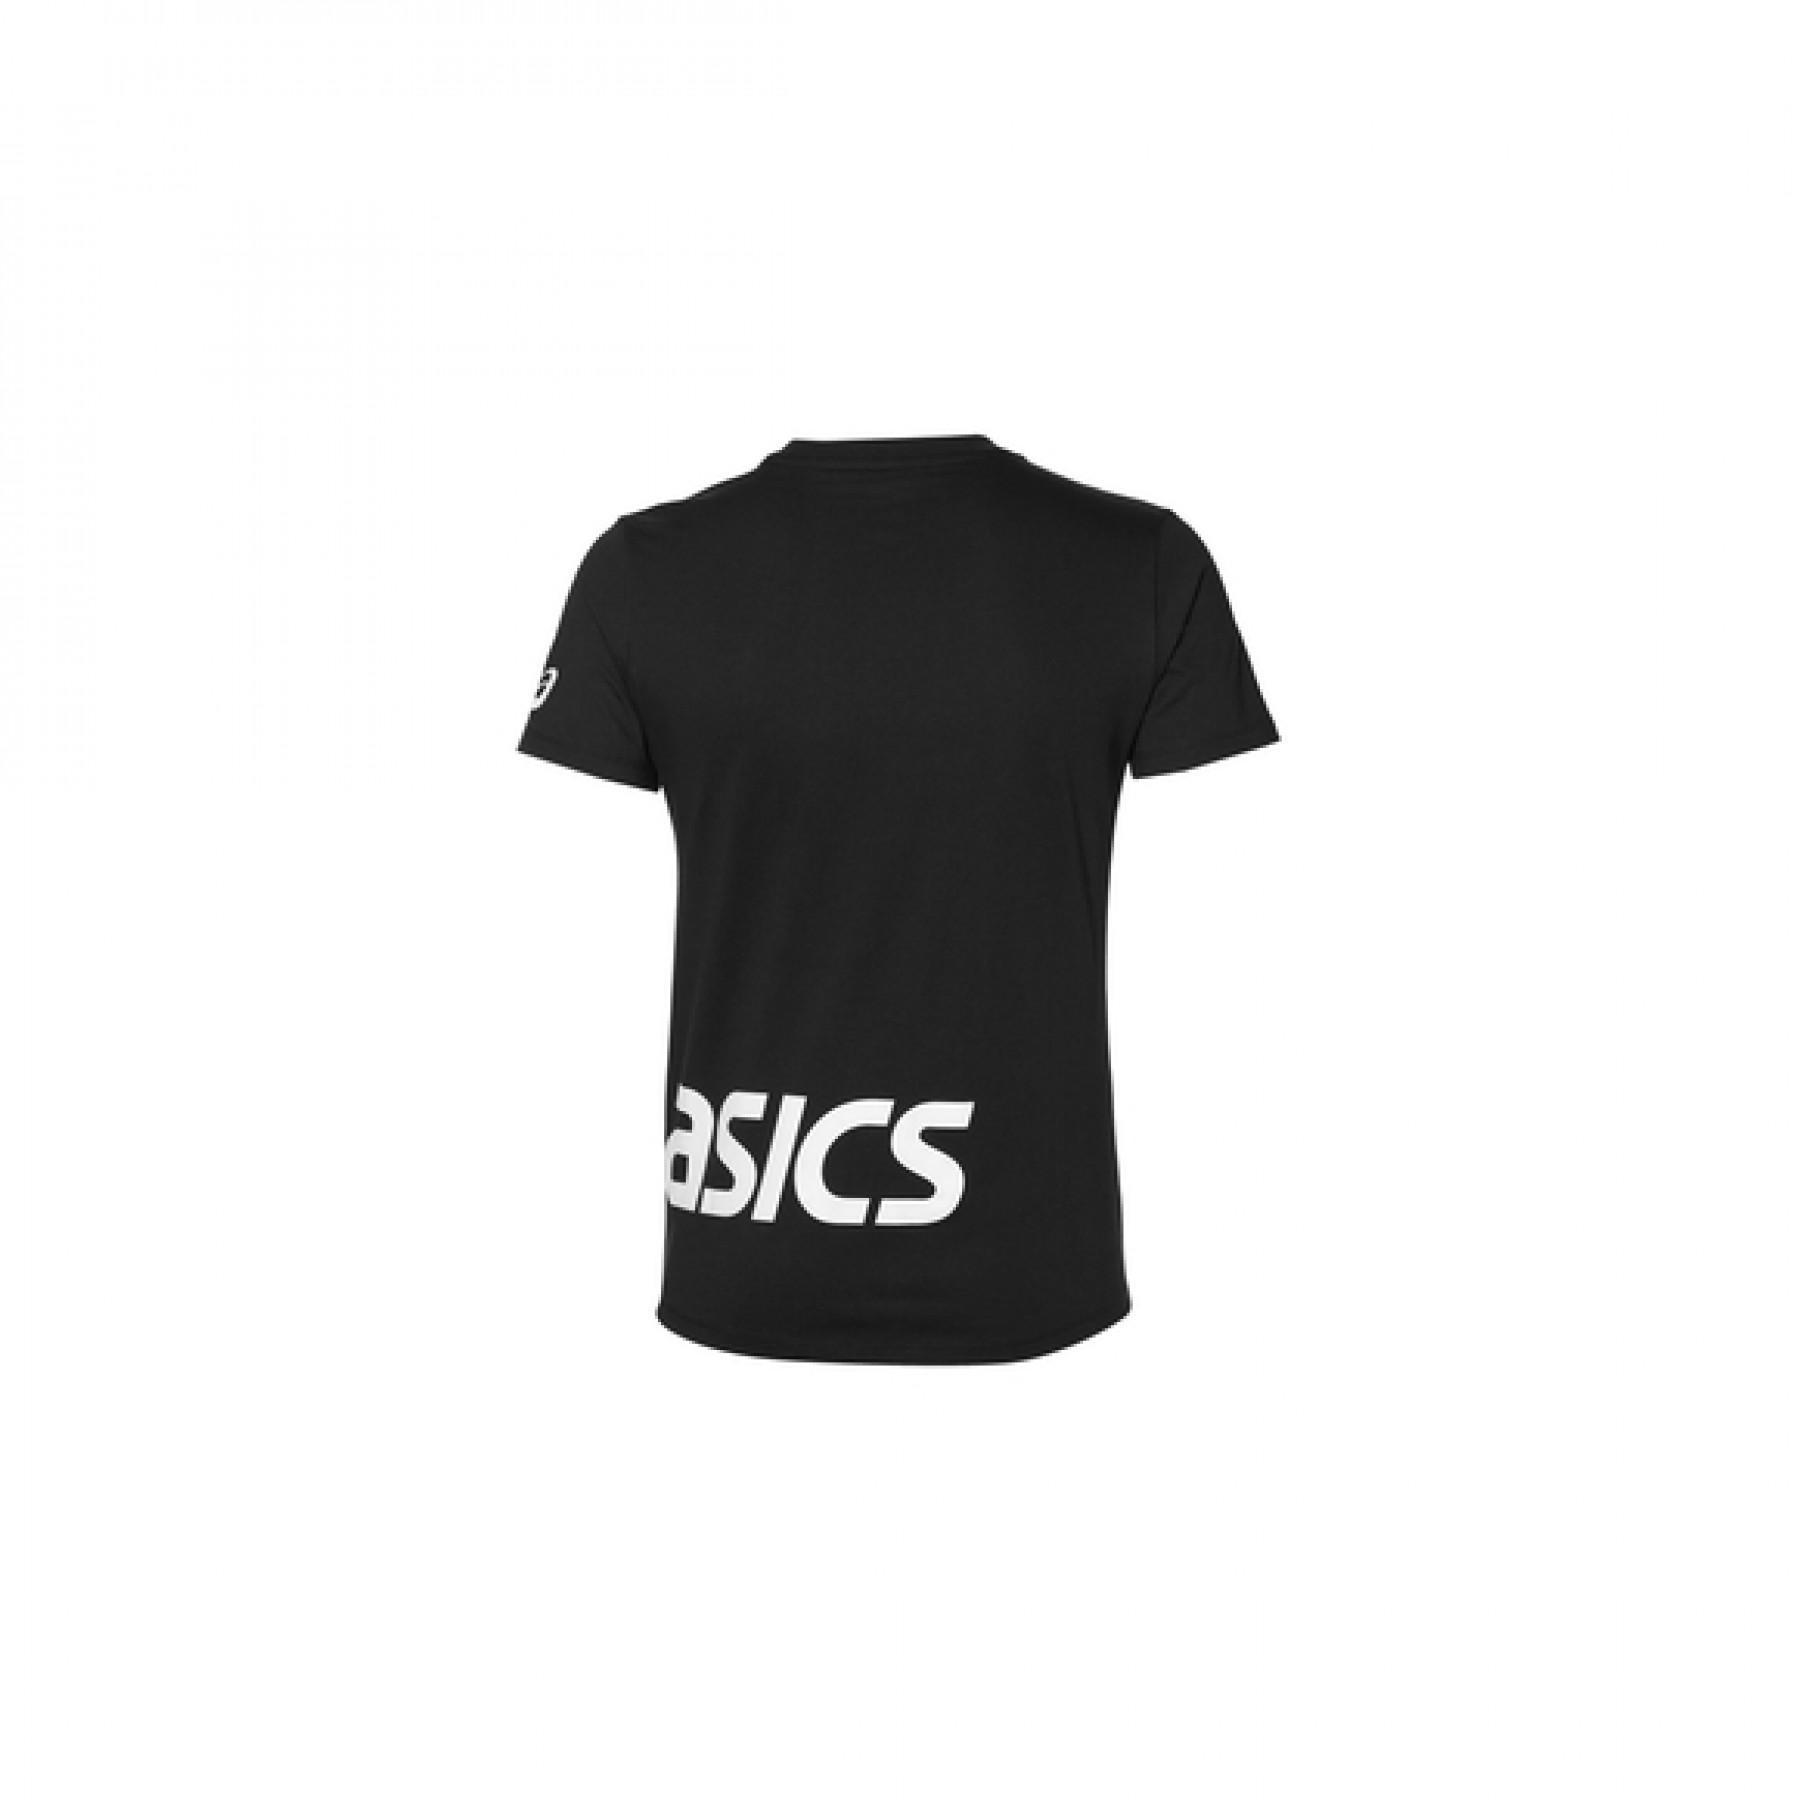 Camiseta Asics low big logo